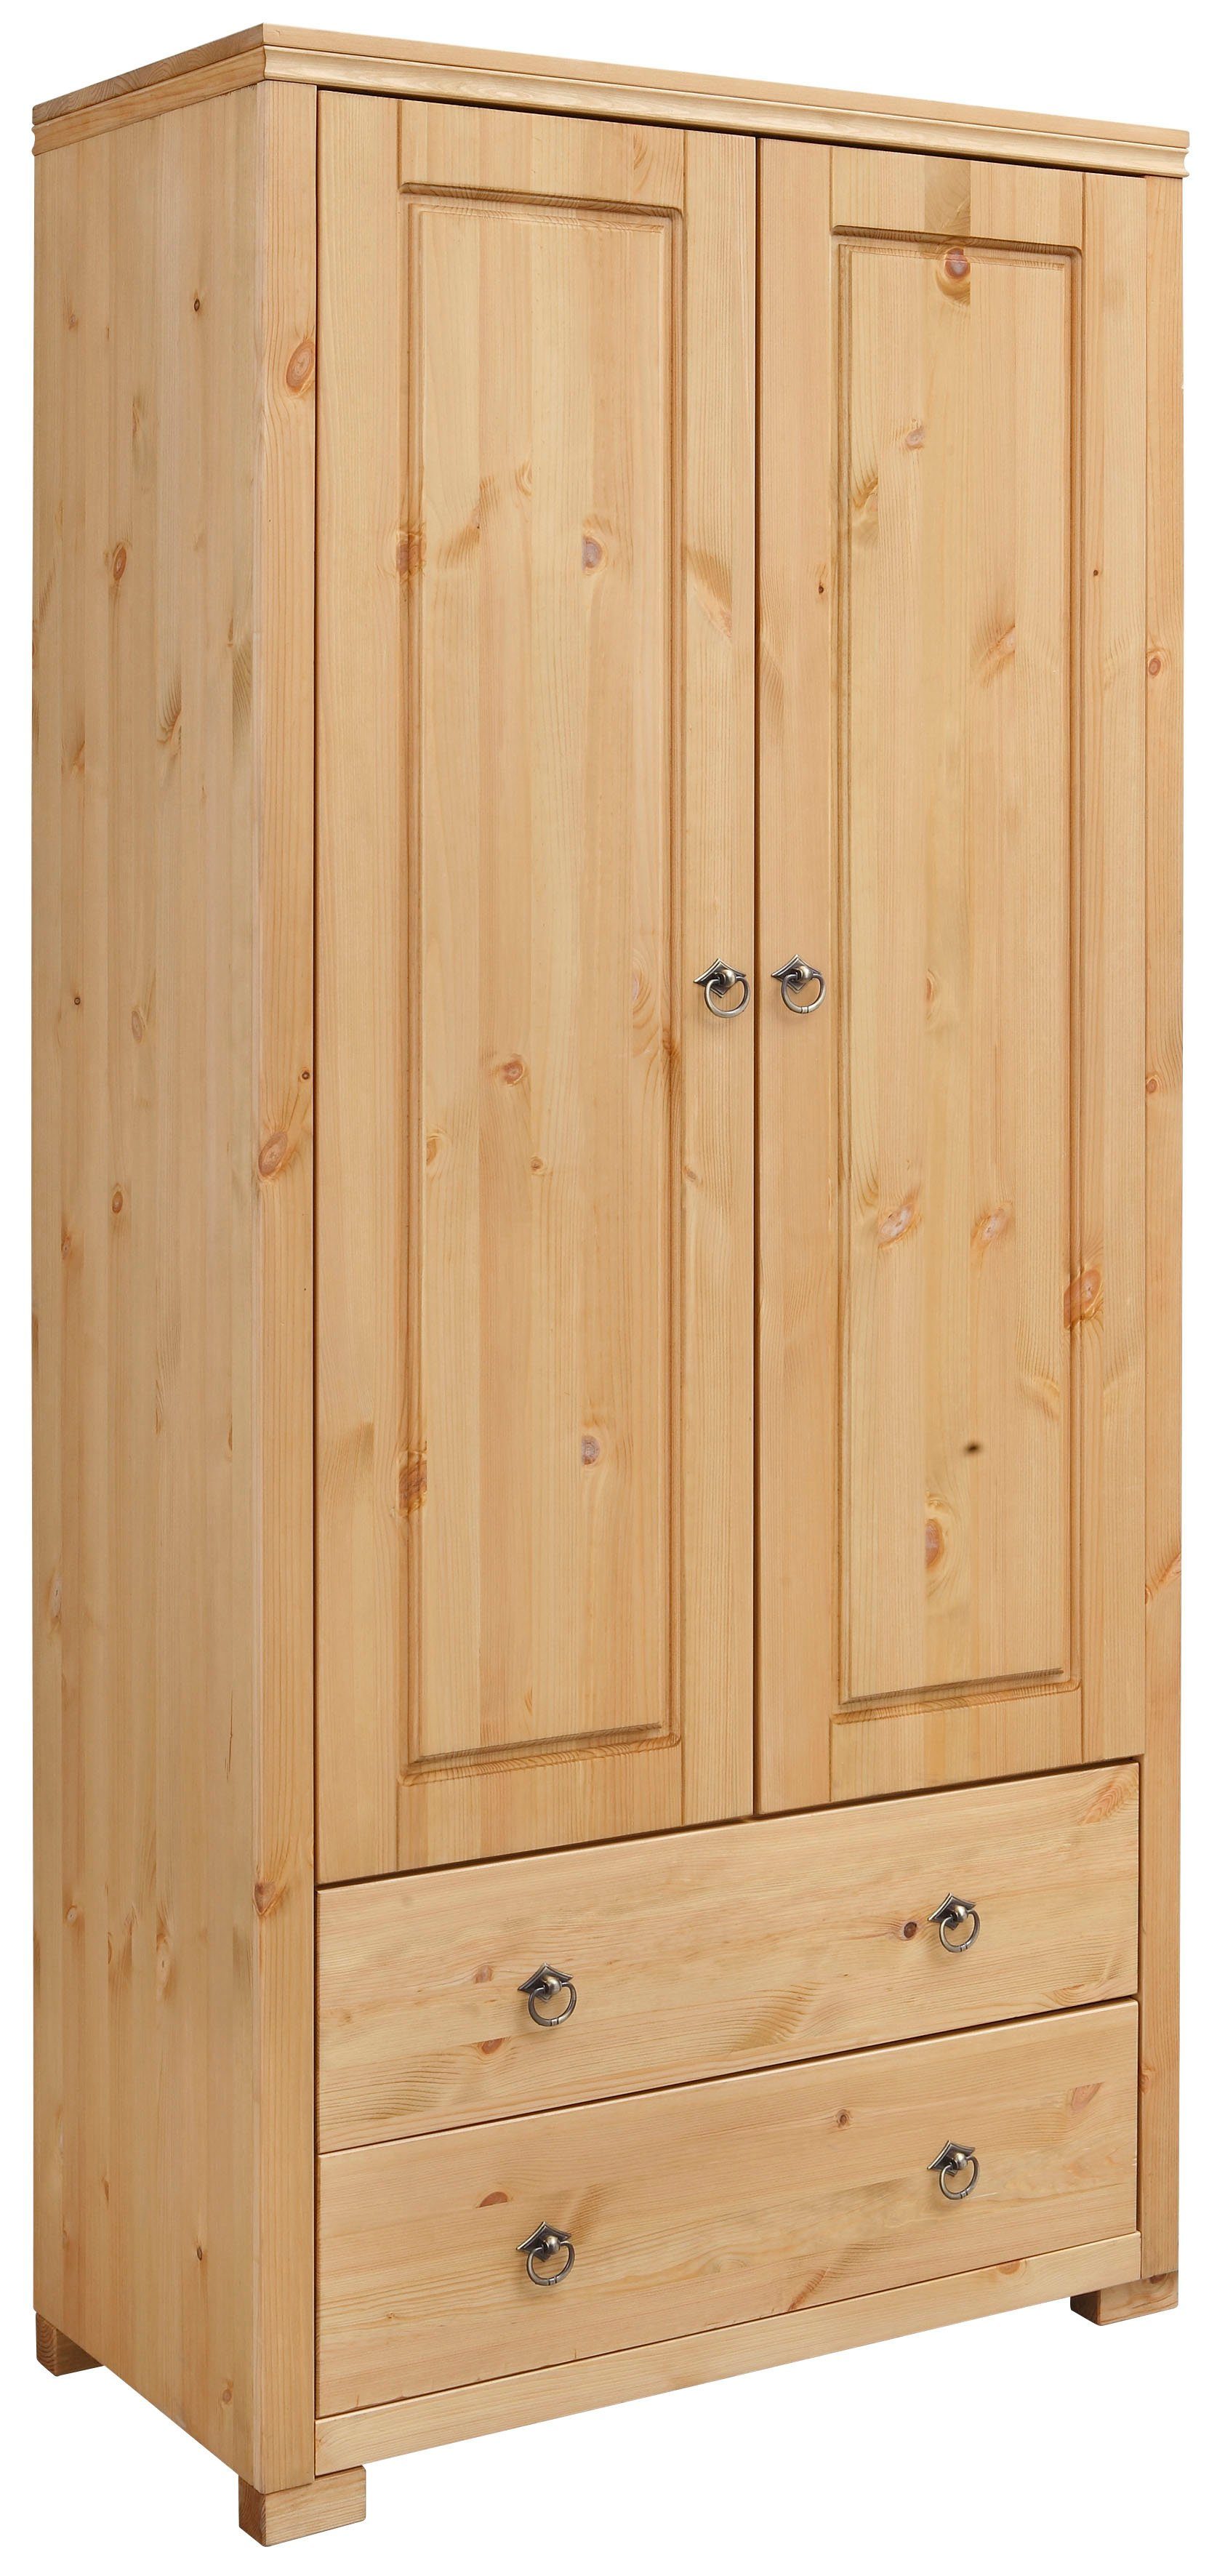 Home affaire Kledingkast Gotland Hoogte 178 cm, met houten deuren